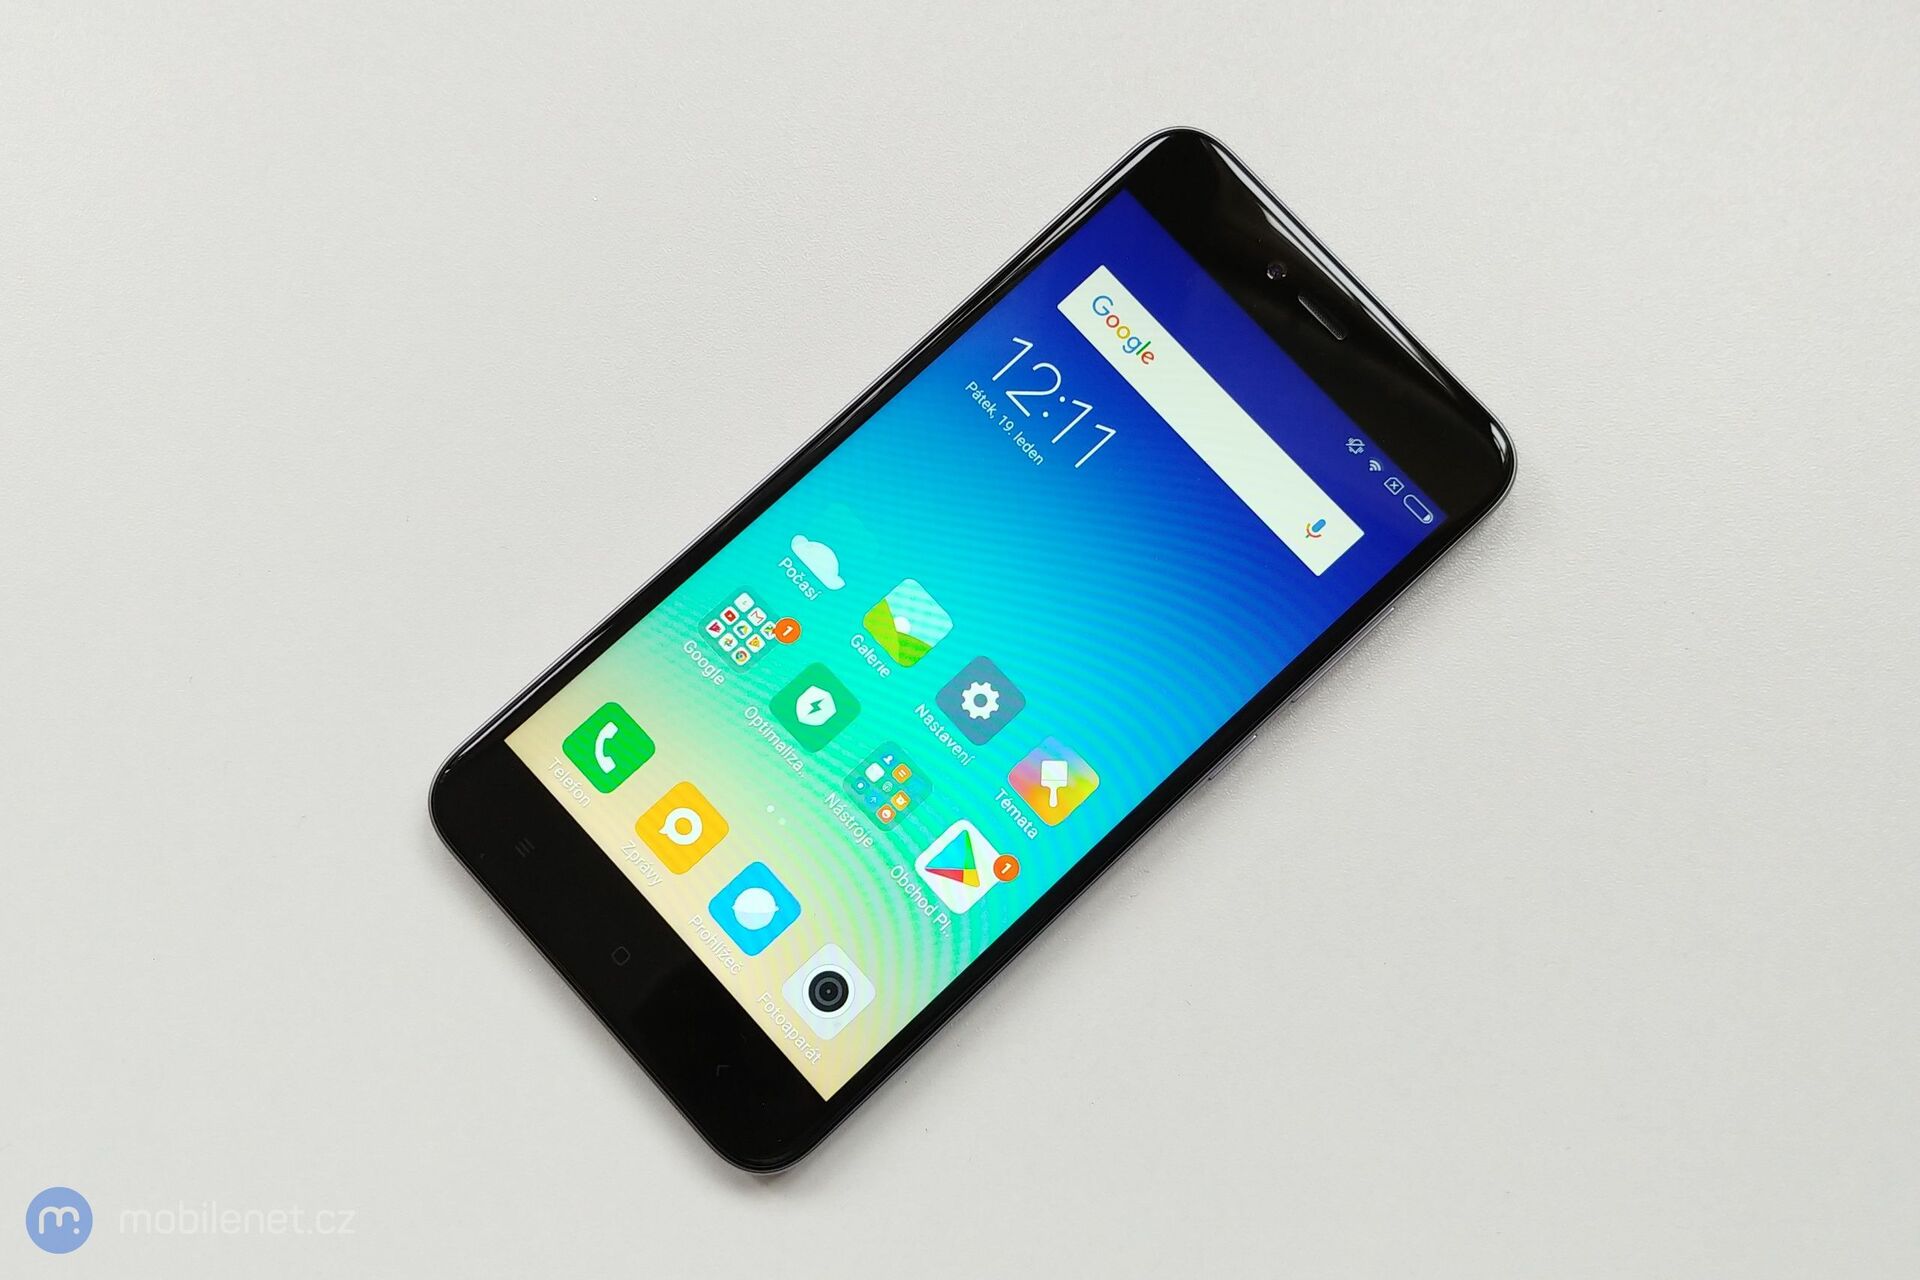 Xiaomi Redmi Note 5A Prime